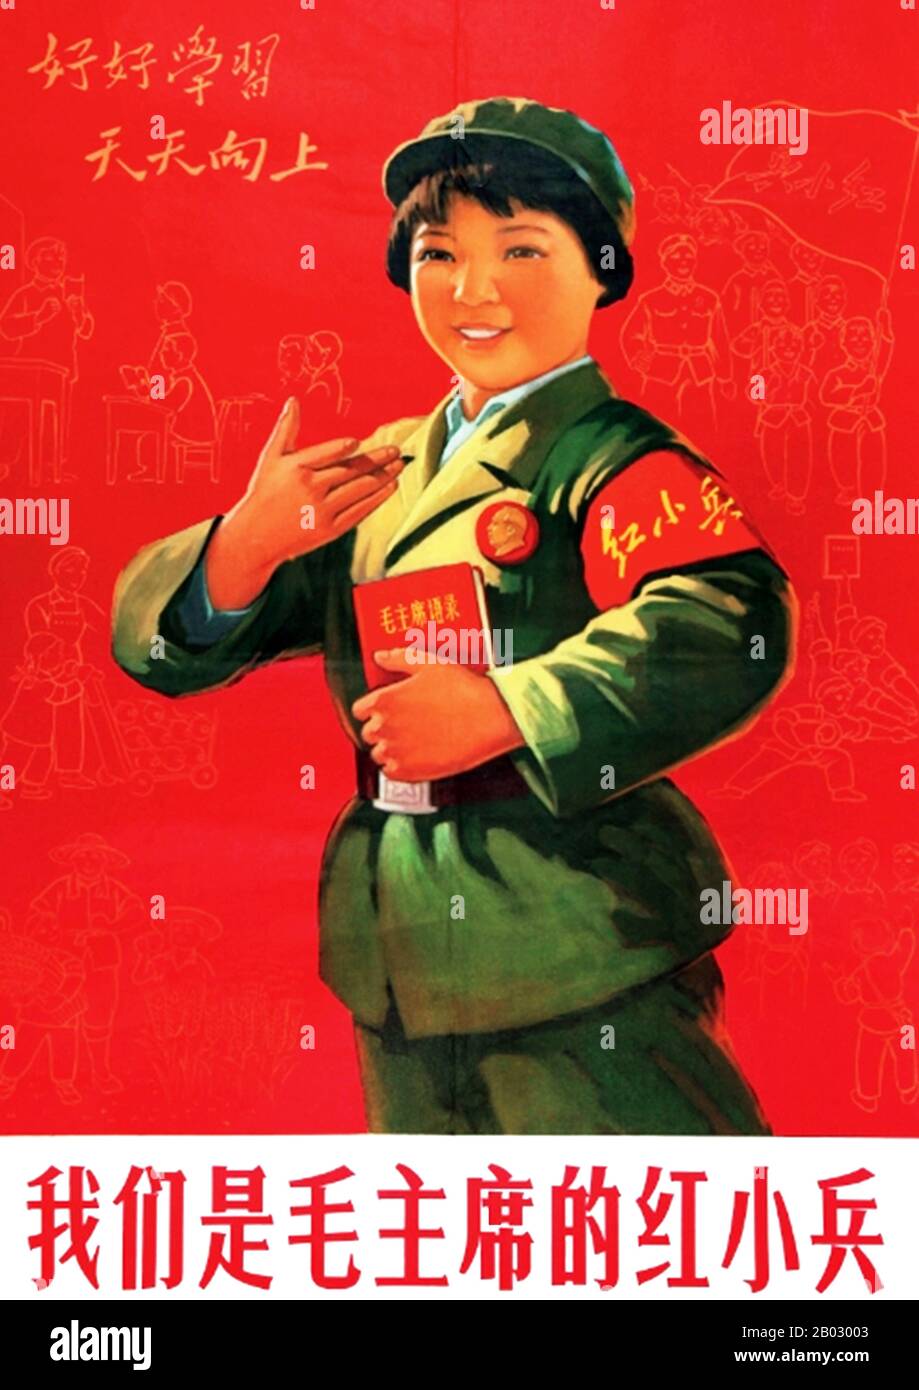 Mao Zedong, auch als Mao Tse-tung (26. Dezember 1893 - 9. September 1976) transliteriert, war ein chinesischer kommunistischer Revolutionär, Guerilla-Kampfstratege, Autor, politischer Theoretiker und Führer der chinesischen Revolution. Er wurde im Allgemeinen als Chairman Mao bezeichnet und war der Architekt der Volksrepublik China (PRC) von ihrer Gründung im Jahr 1949 an und hatte bis zu seinem Tod im Jahr 1976 die autoritäre Kontrolle über die Nation inne. Sein theoretischer Beitrag zum Marxismus-Leninismus, zusammen mit seinen militärischen Strategien und der Marke der politischen Politik, werden heute kollektiv als Maoismus bezeichnet. Stockfoto